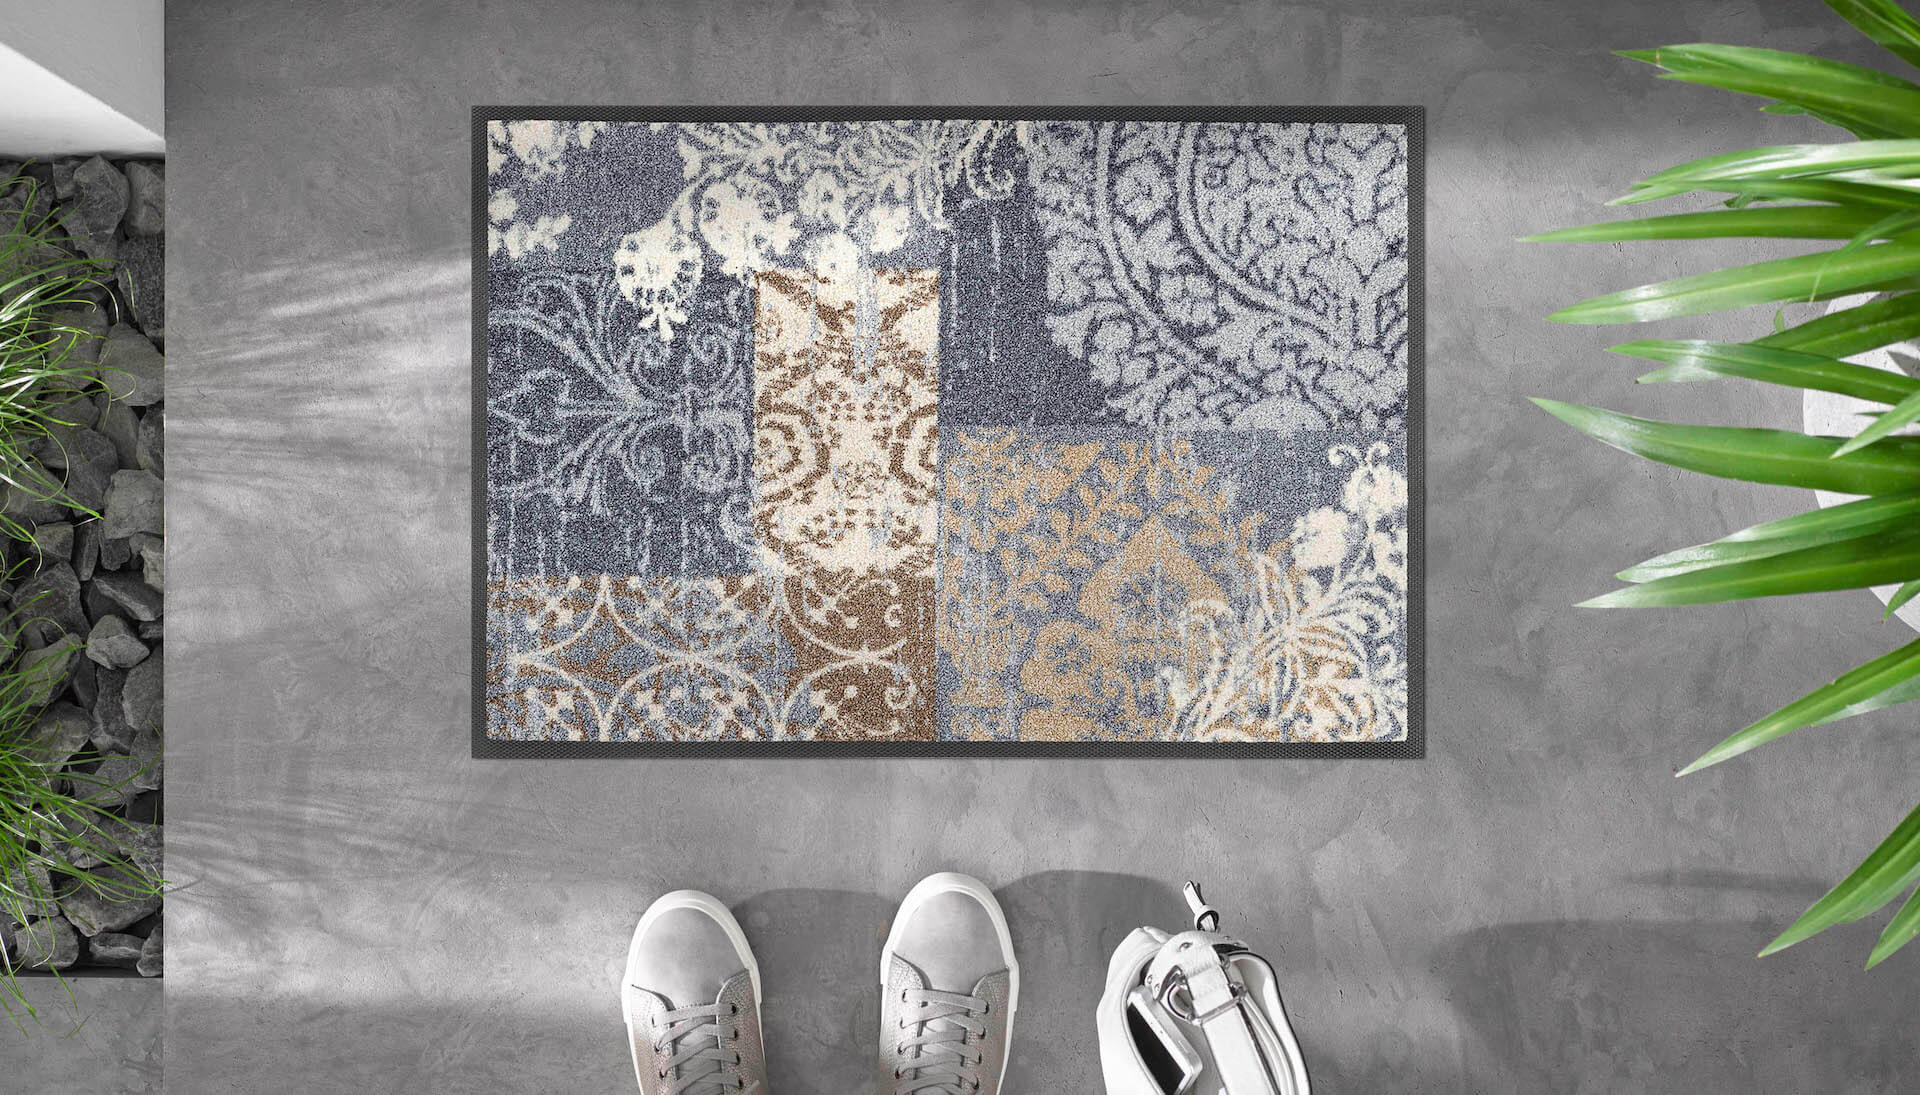 Sauberlaufmatte Armonia grey, Wash & Dry Interior Design, 40 x 60 cm, Milieubild